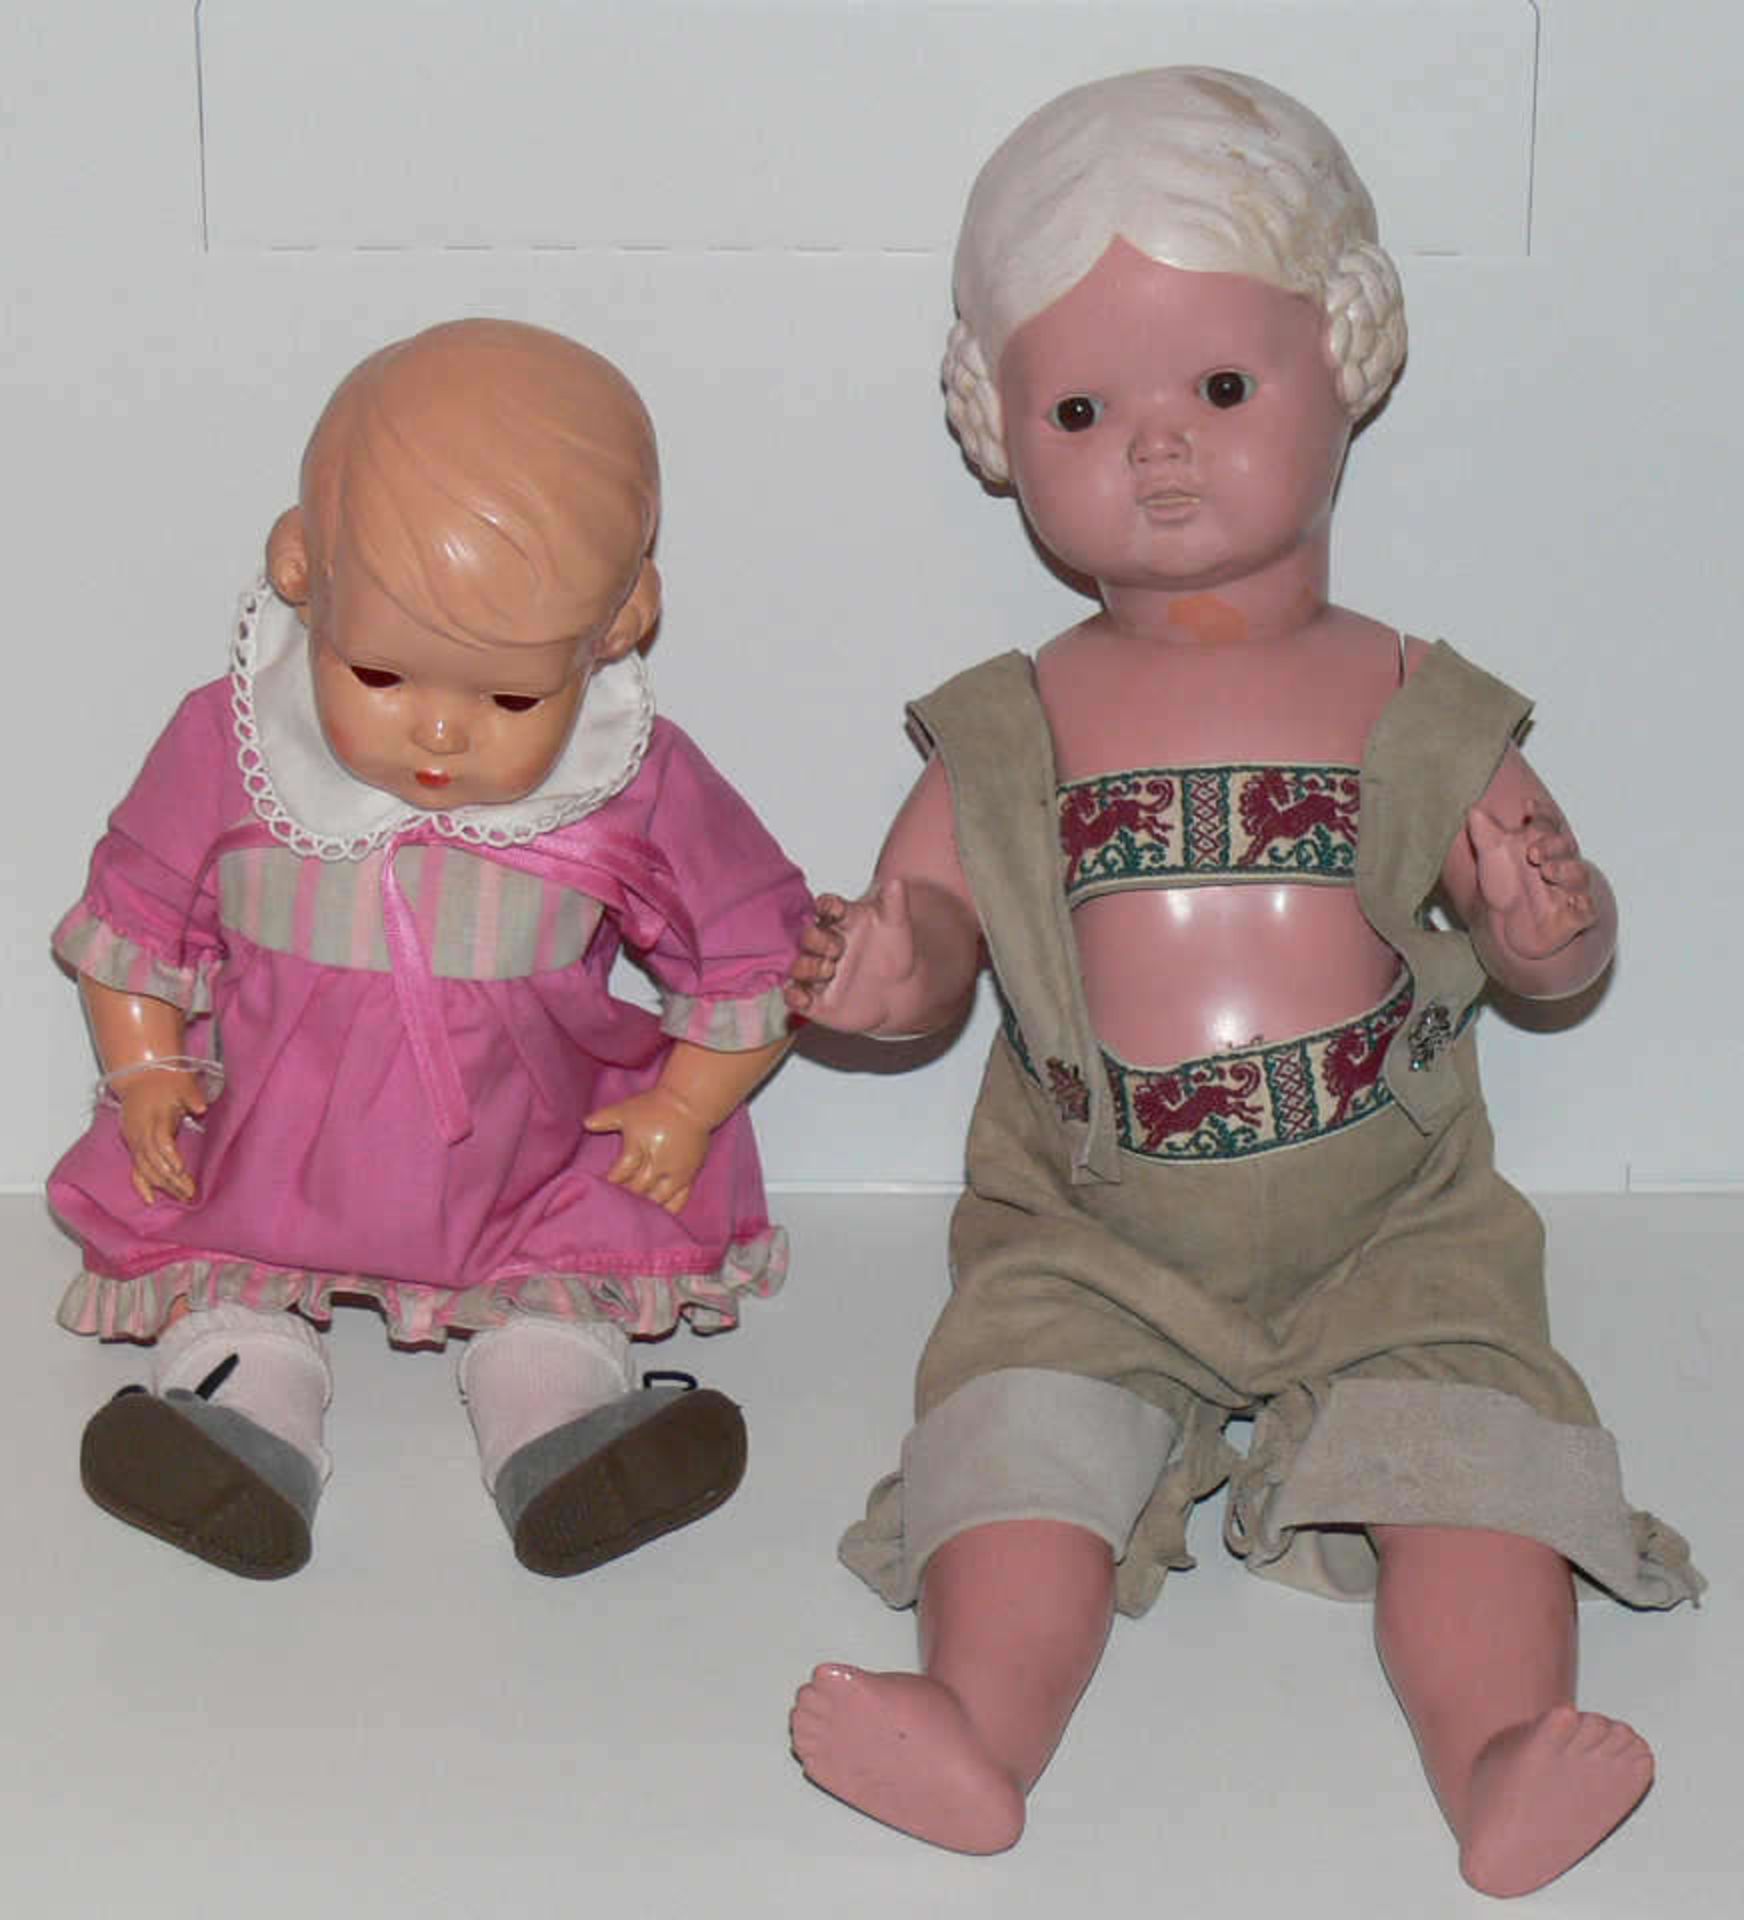 Lot Schildkröt - Puppen, bestehend aus Ursel 64, ein Bein defekt, alte Bärbel 45 mit Metallfeder,